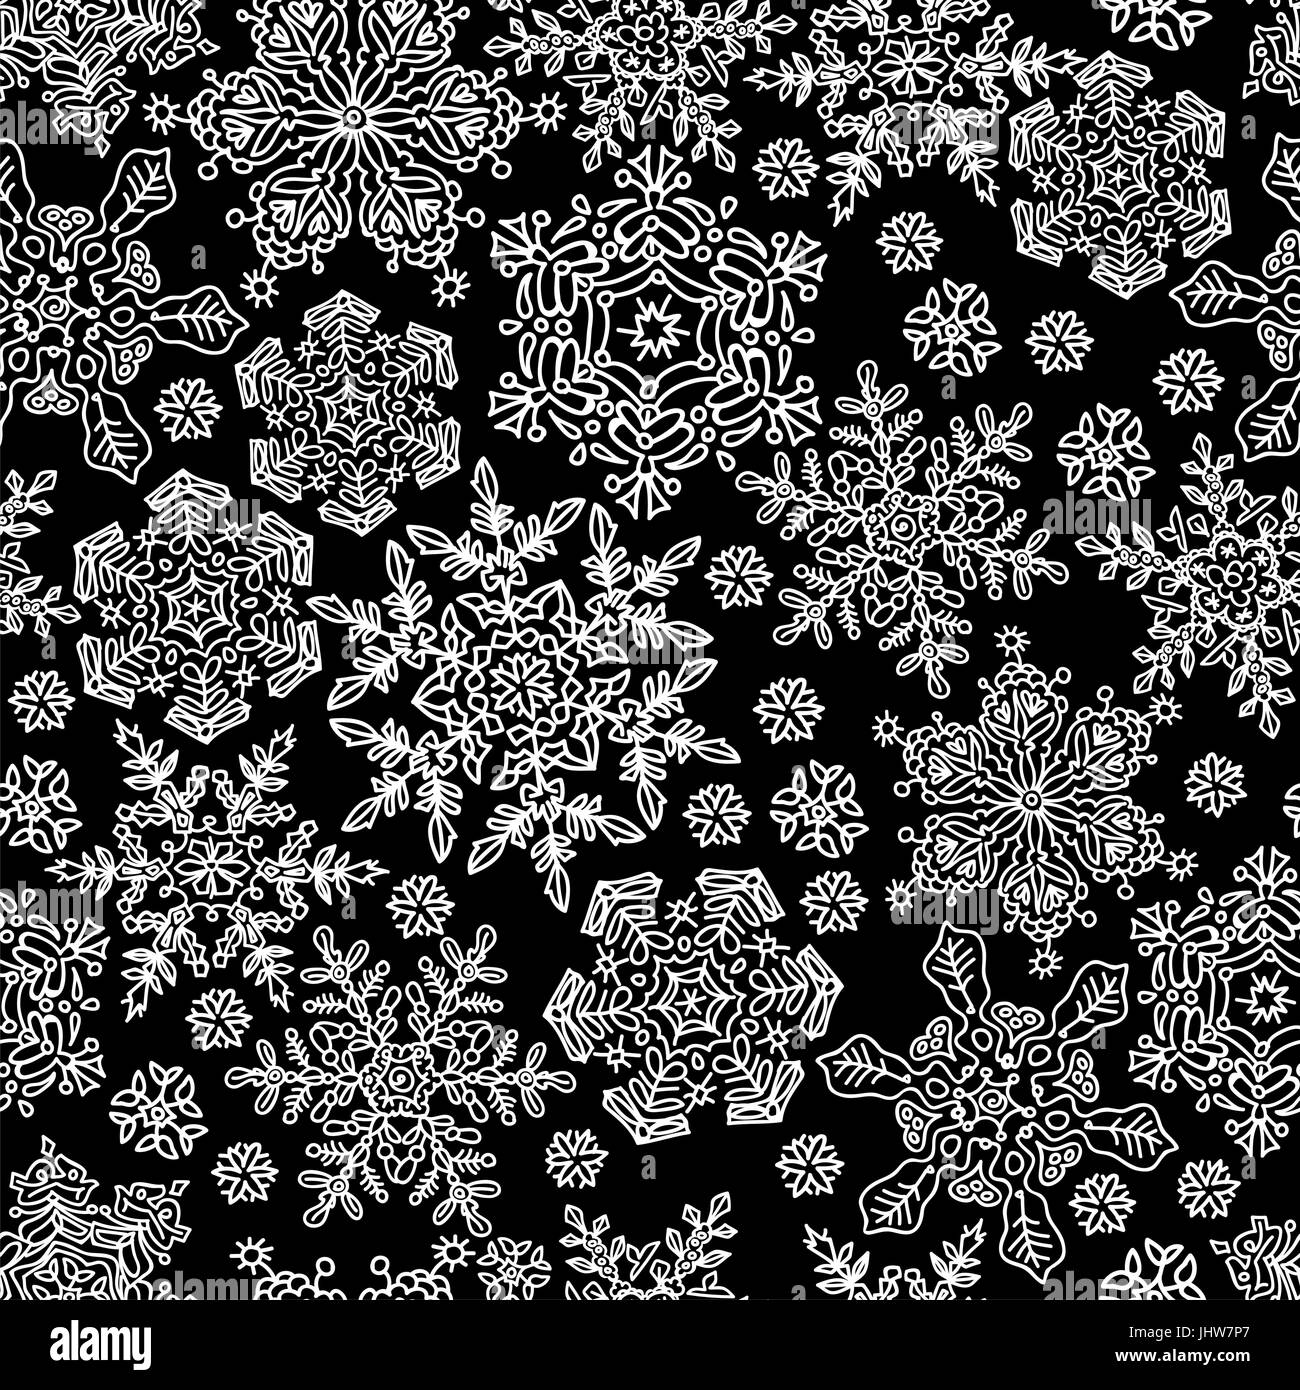 Nahtlose Schneeflocken Muster. Weiß auf schwarz, Vektor, EPS8 Stock Vektor